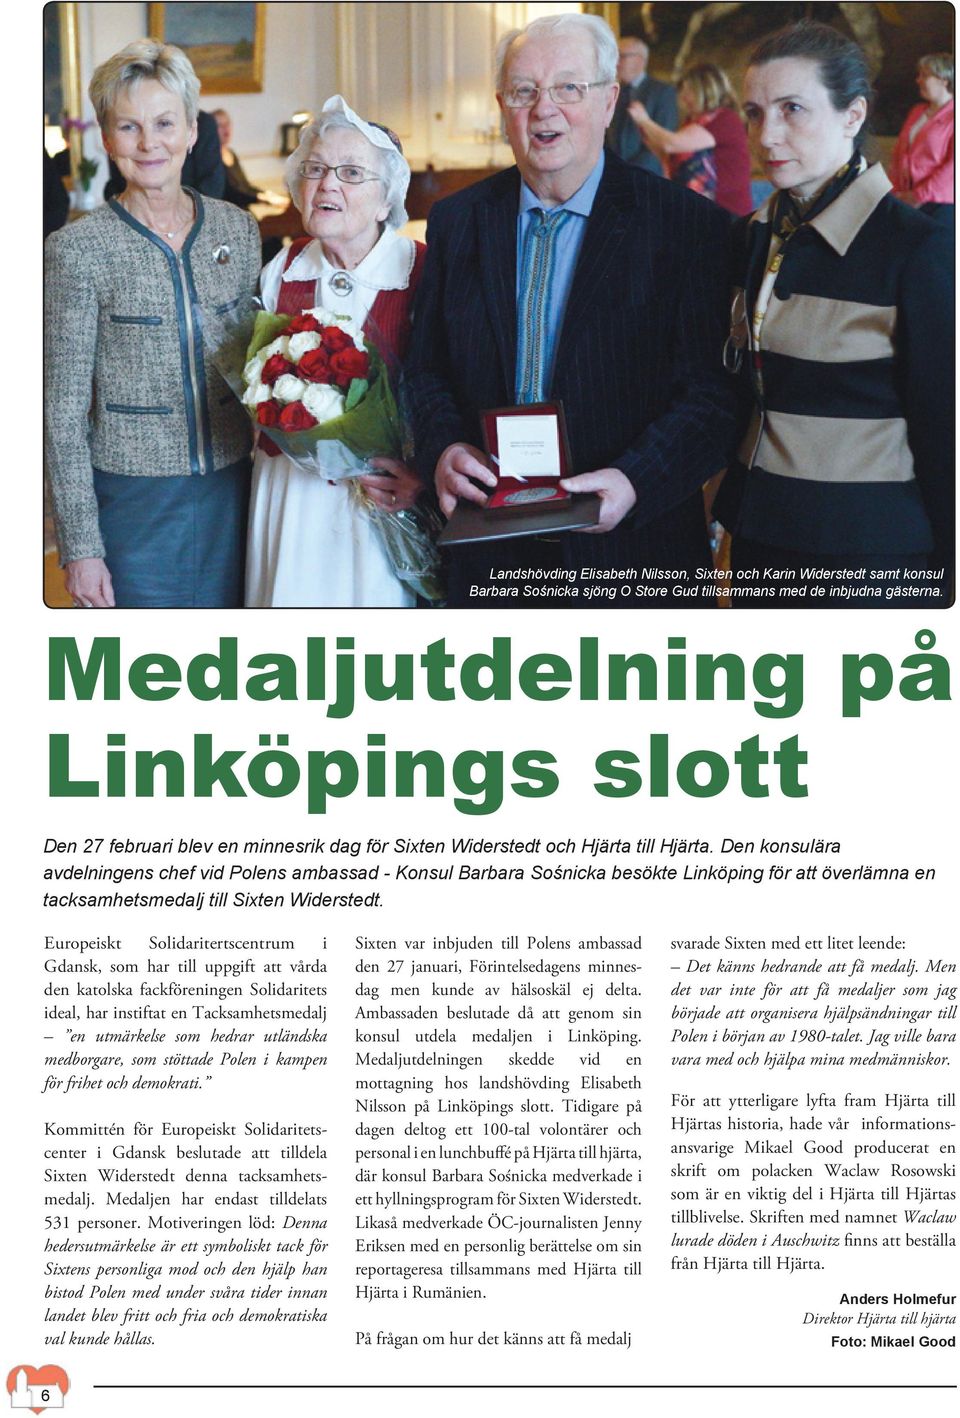 Den konsulära avdelningens chef vid Polens ambassad - Konsul Barbara Sośnicka besökte Linköping för att överlämna en tacksamhetsmedalj till Sixten Widerstedt.